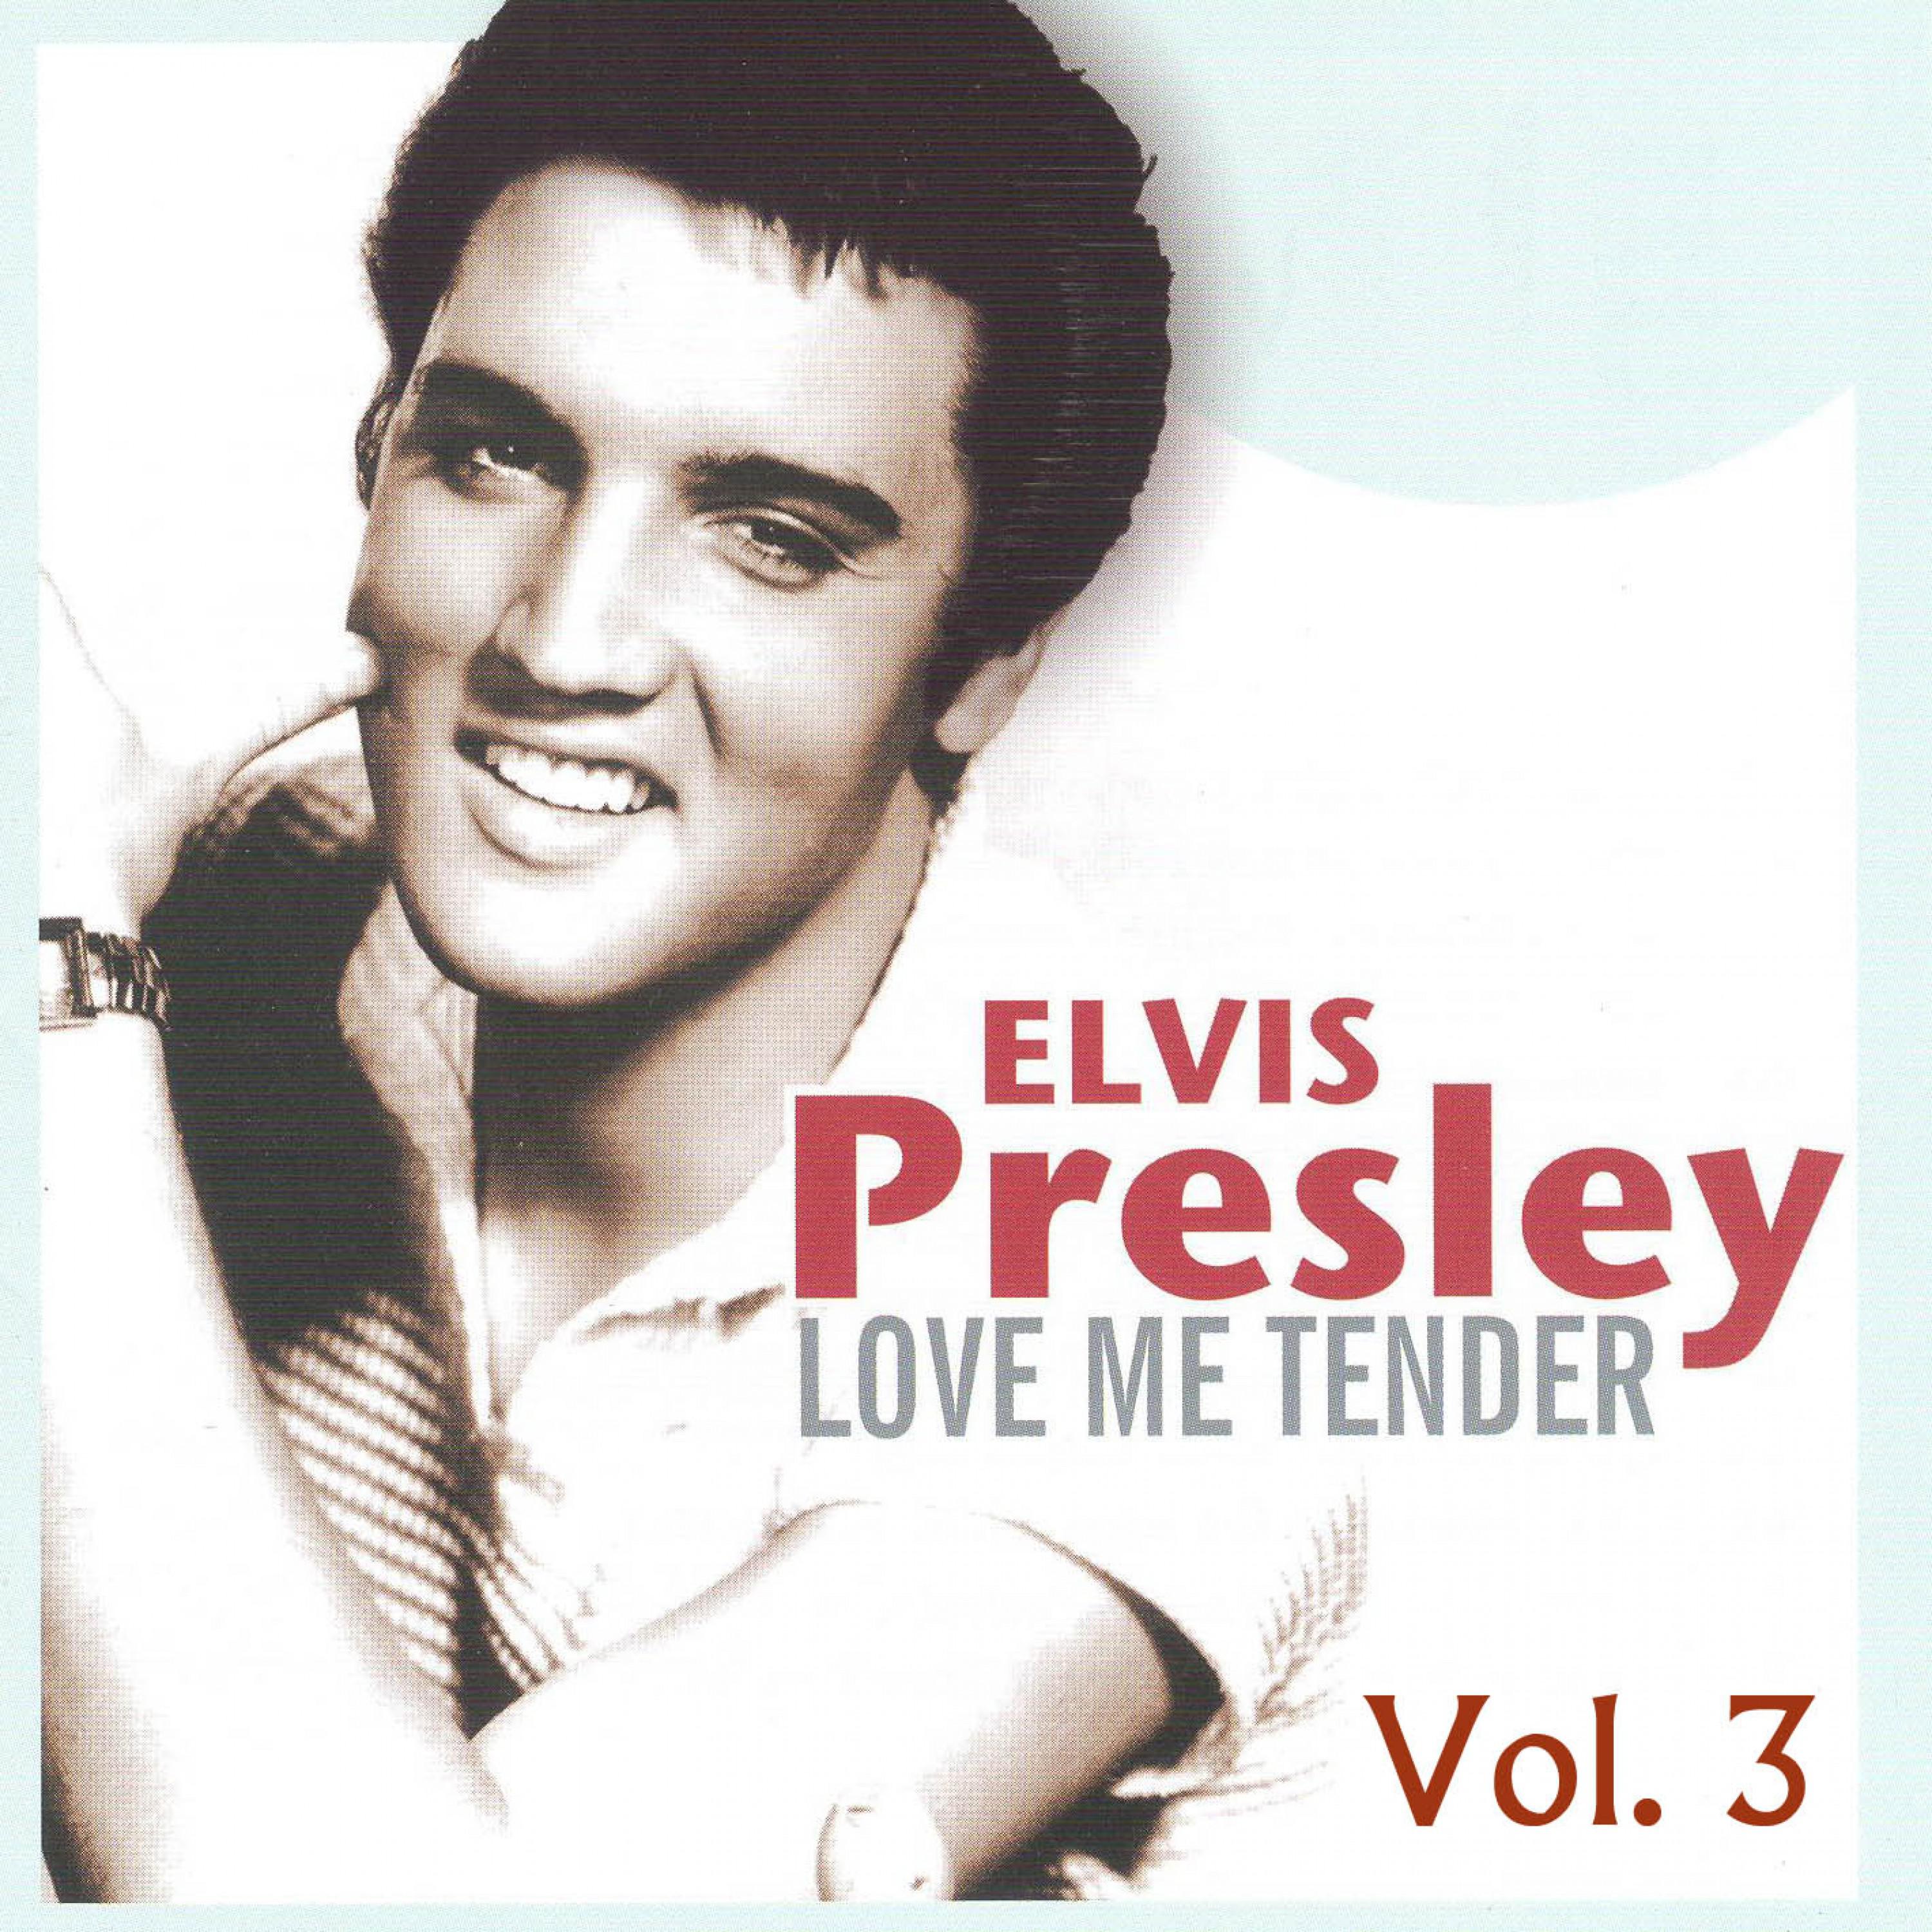 Elvis Presley Vol. 3